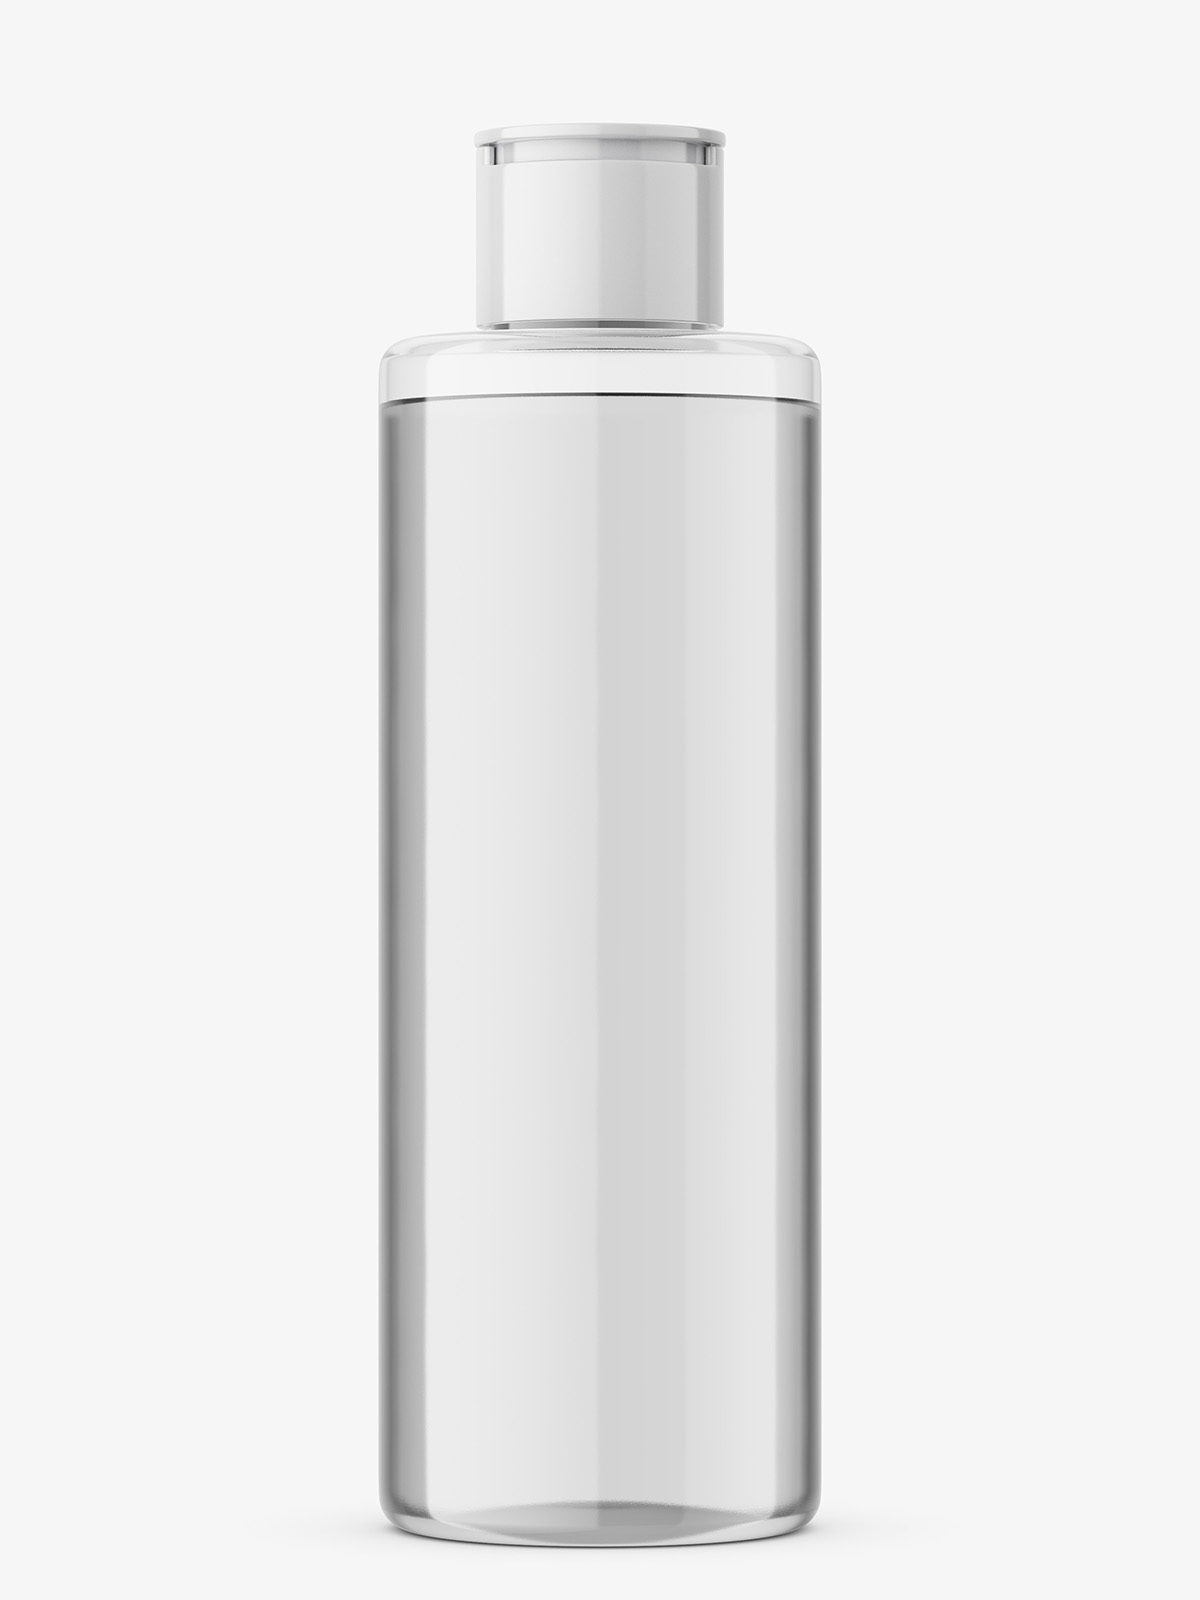 Download Transparent Cosmetic Oil Bottle Mockup Smarty Mockups